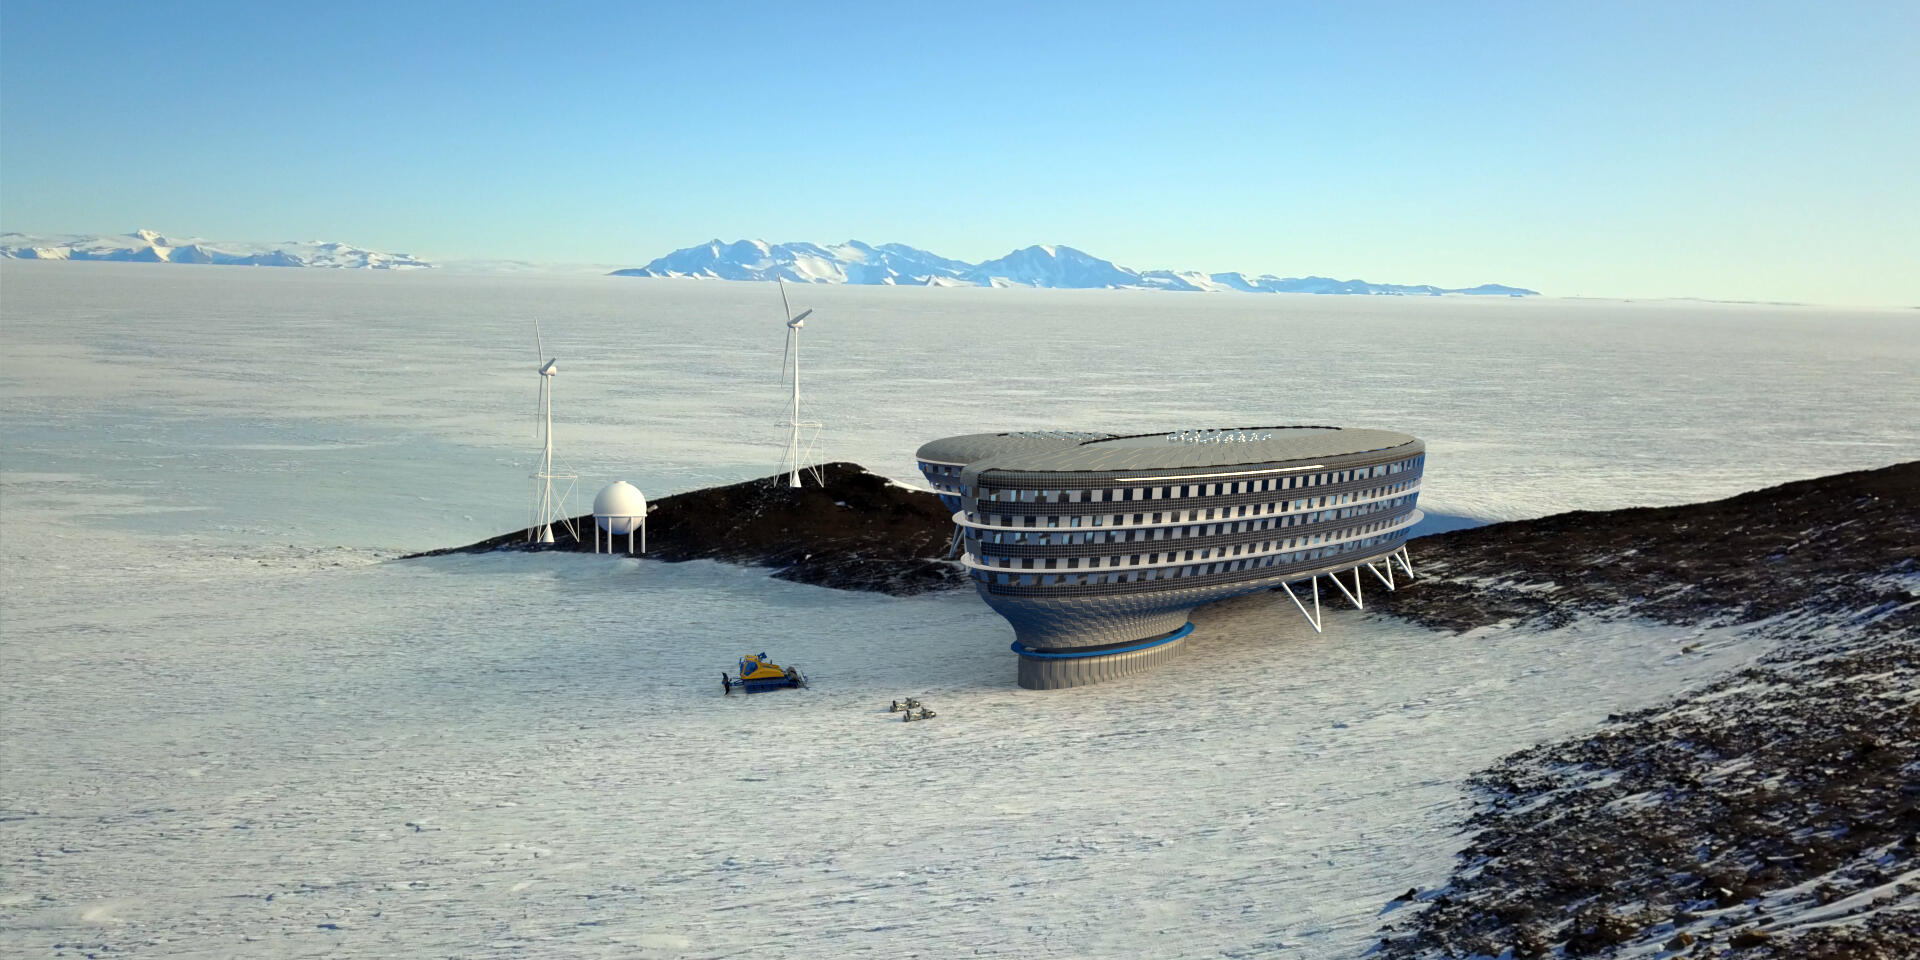 Image de synthèse montrant le projet de la station « Andromeda » en Antarctique, de la Fondation polaire internationale.